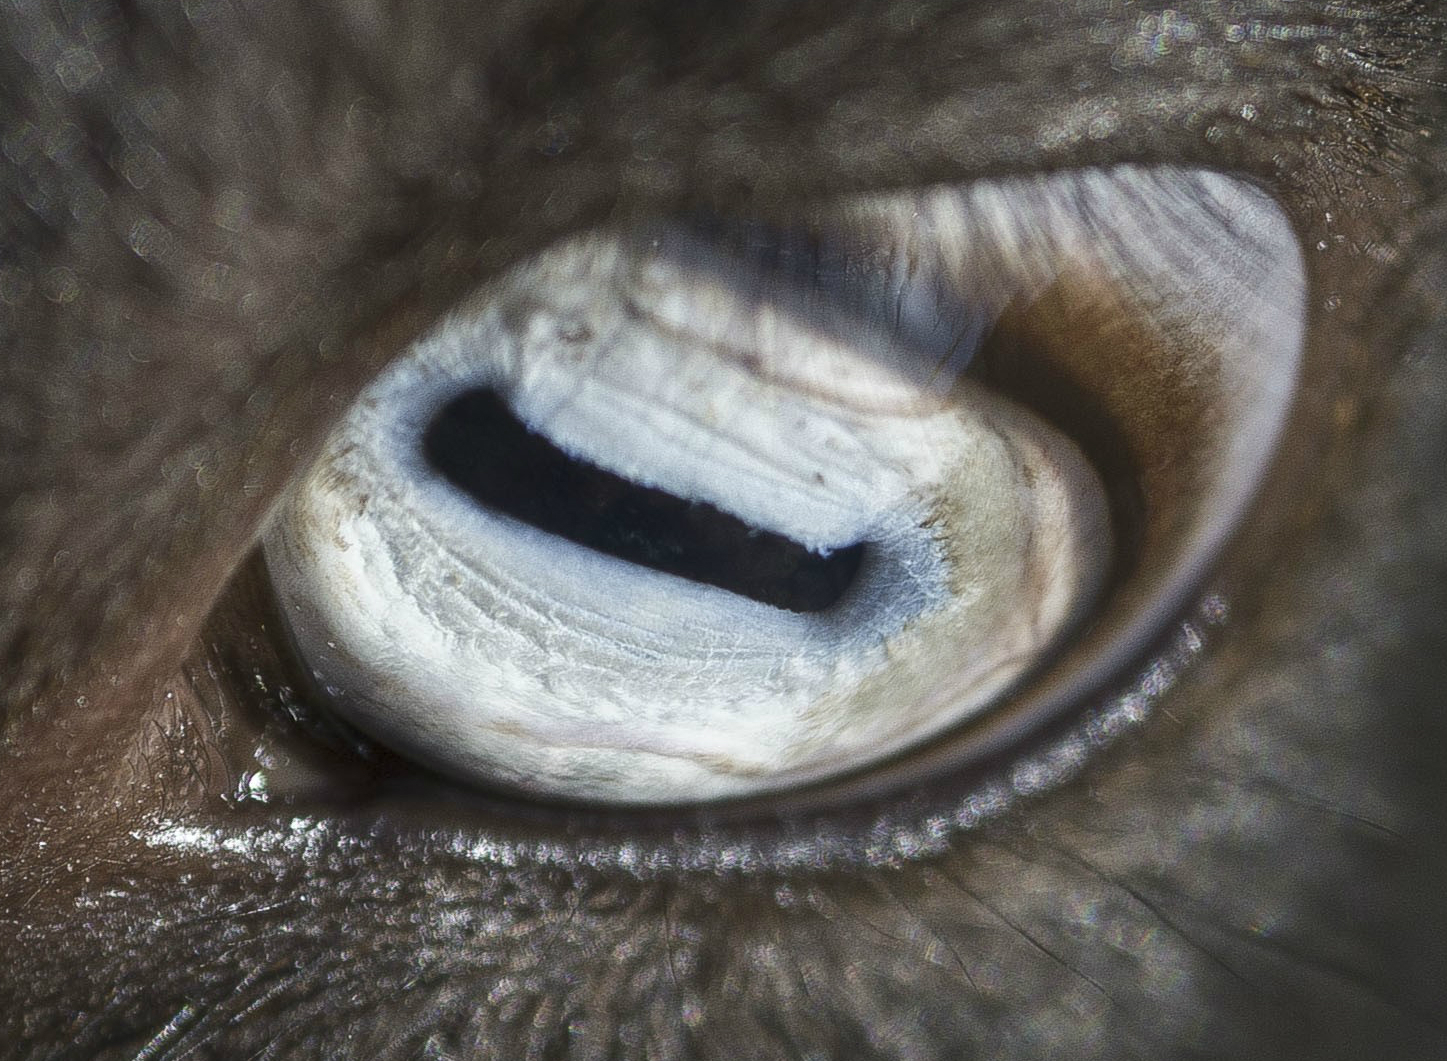 Milyen állat szeme látszik a képen?